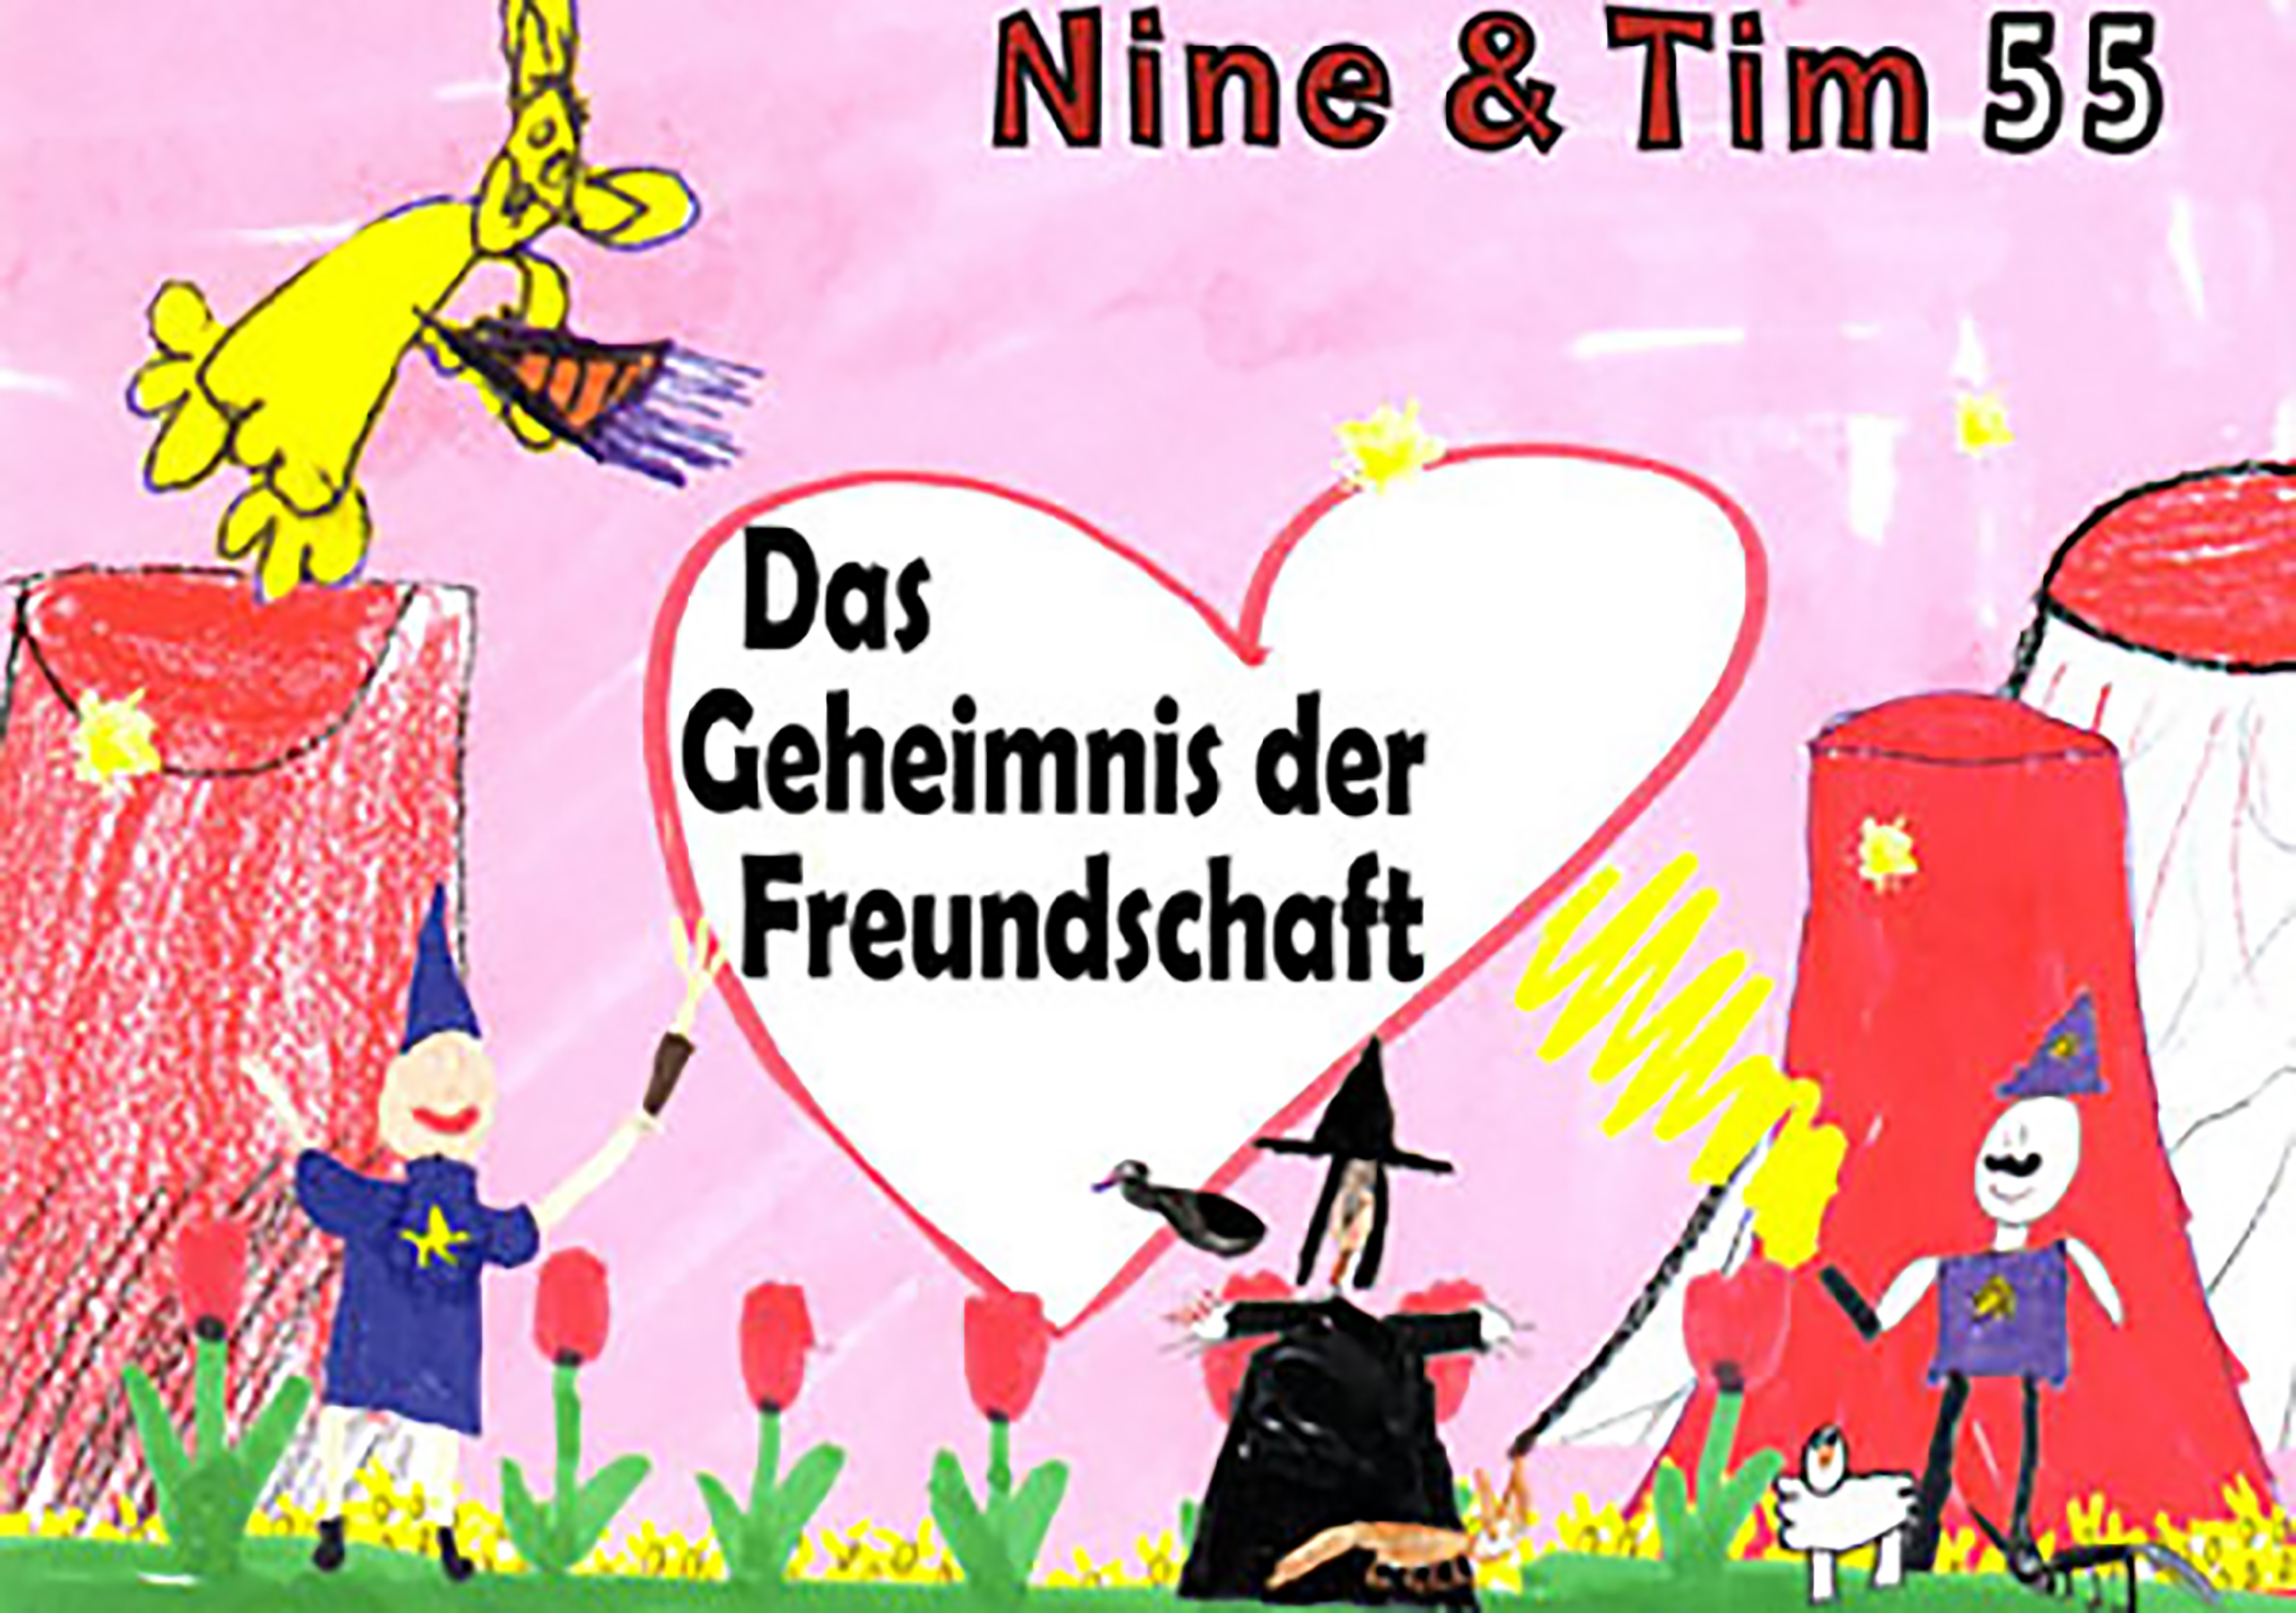 Das Bild zeigt ein Cover der Publikation Nine  Tim Heft 55